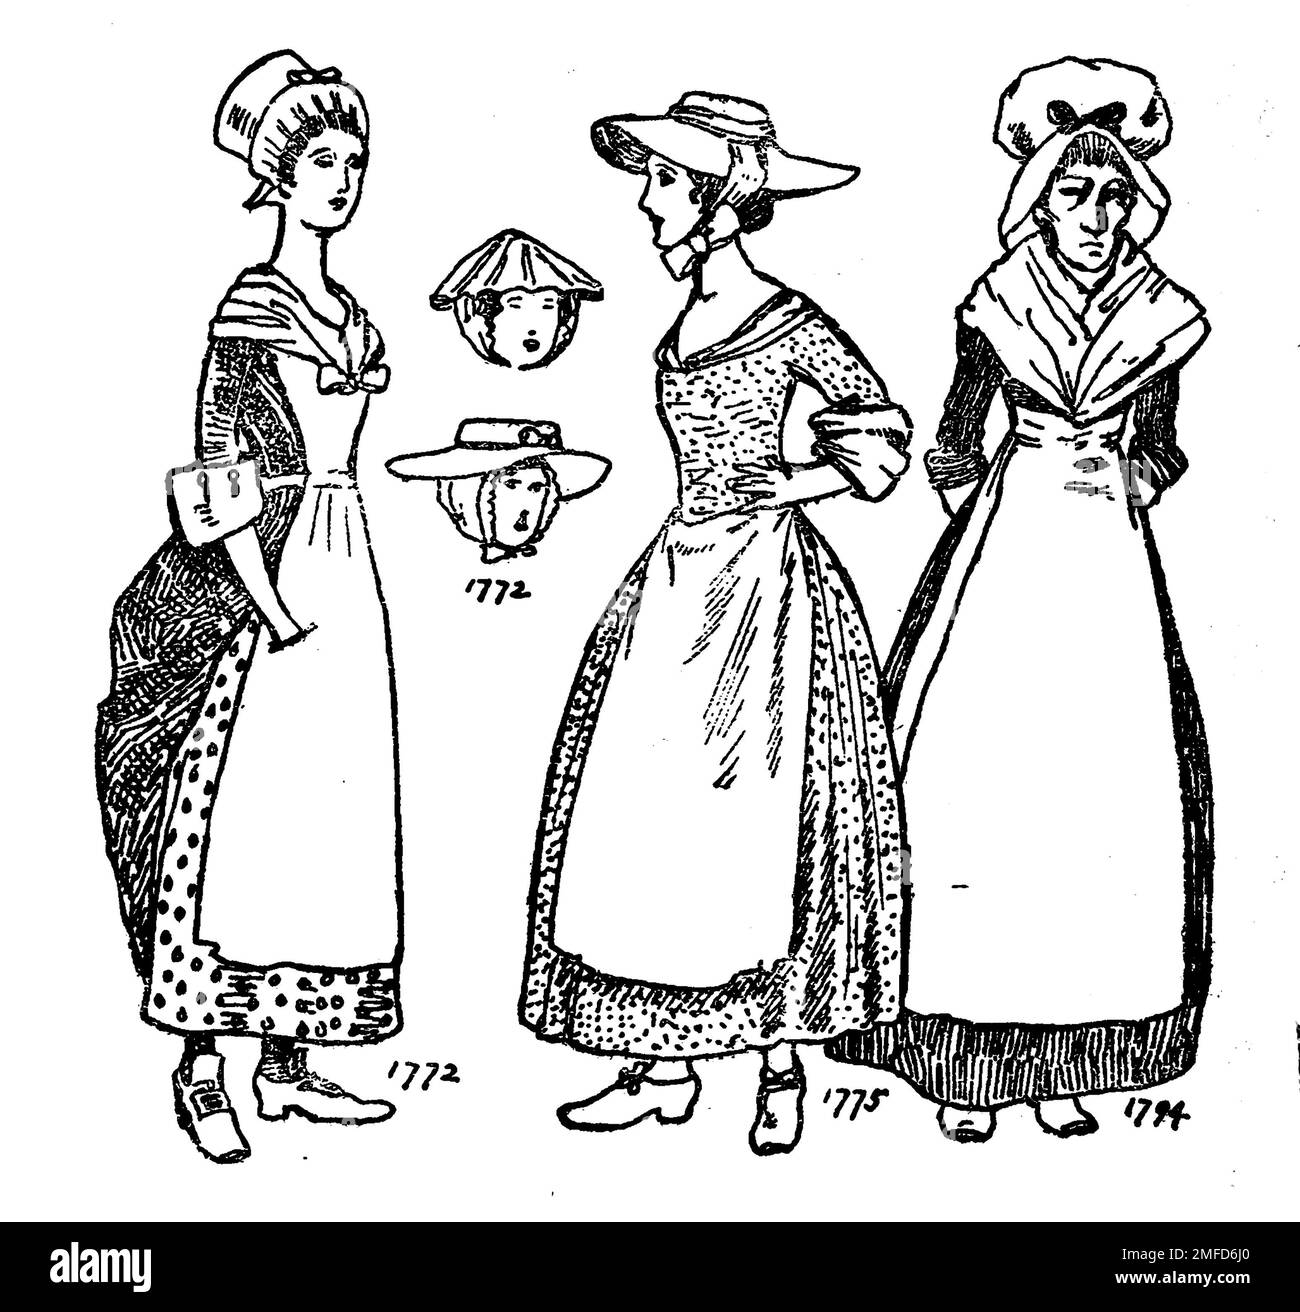 Linienkunst der Frauenkleidung zur Zeit von George III Aus dem Buch " English Costume " von Dion Clayton Calthrop, 1878-1937 Publikationsdatum 1907 Publisher London, A. & C. Black Stockfoto